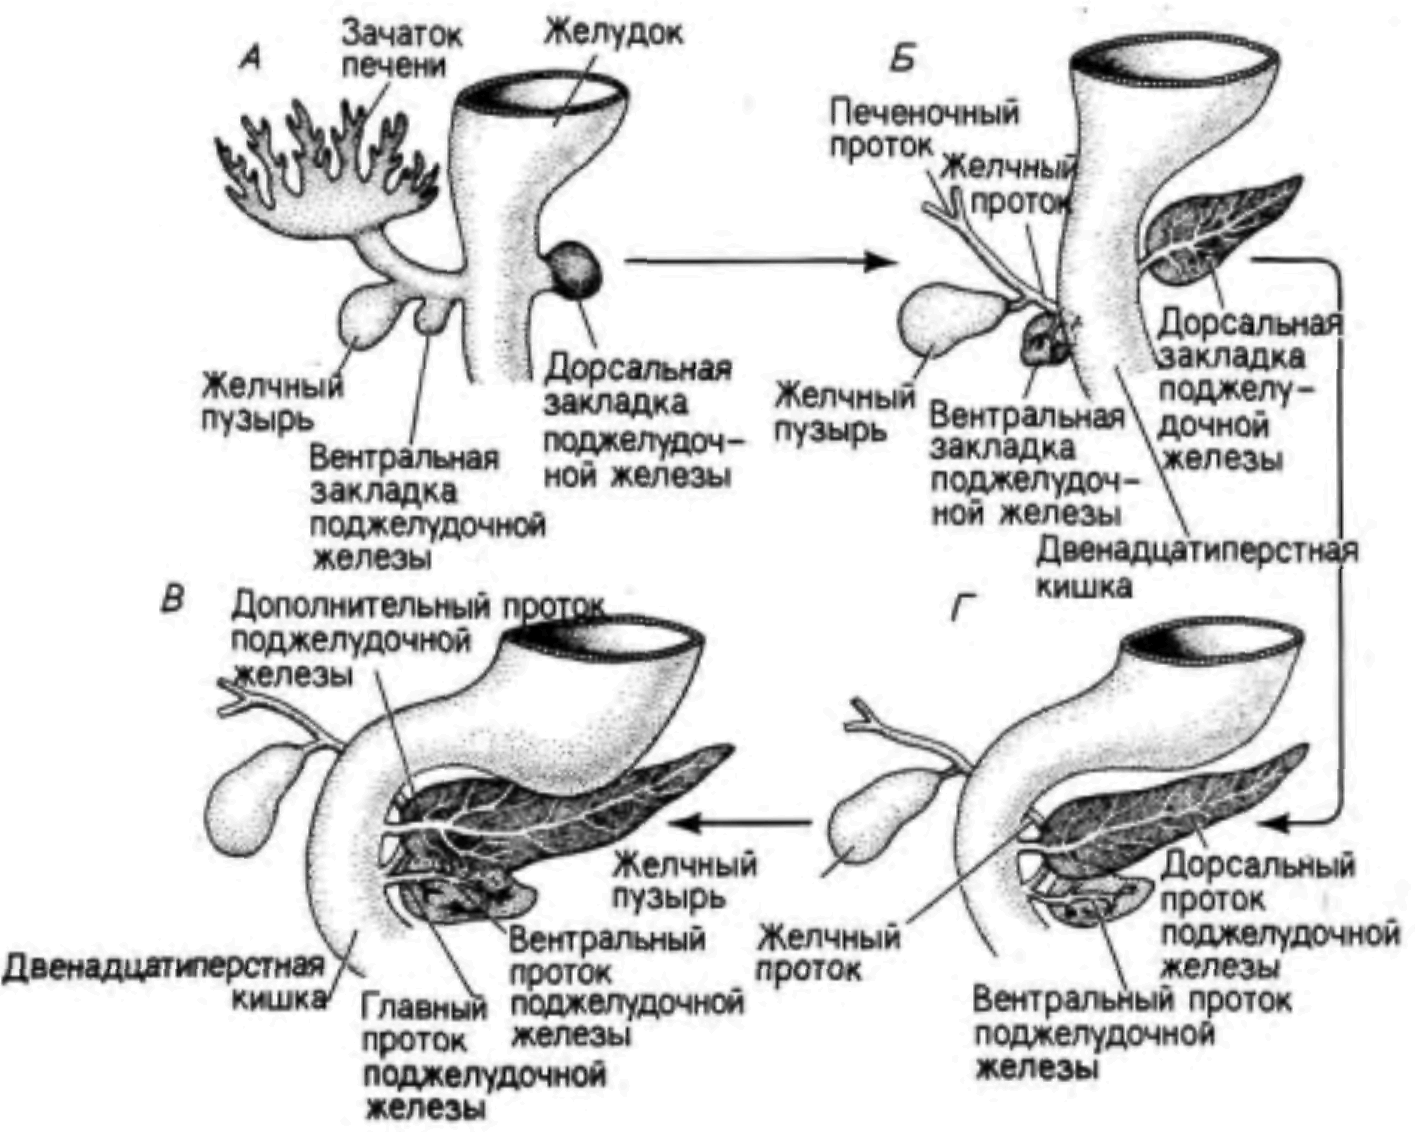 Эпителий печени и поджелудочной железы. Эмбриональное развитие поджелудочной железы. Развитие печени в эмбриогенезе. Эмбриогенез пороков развития желчевыводящих путей. Развитие поджелудочной железы в эмбриогенезе.